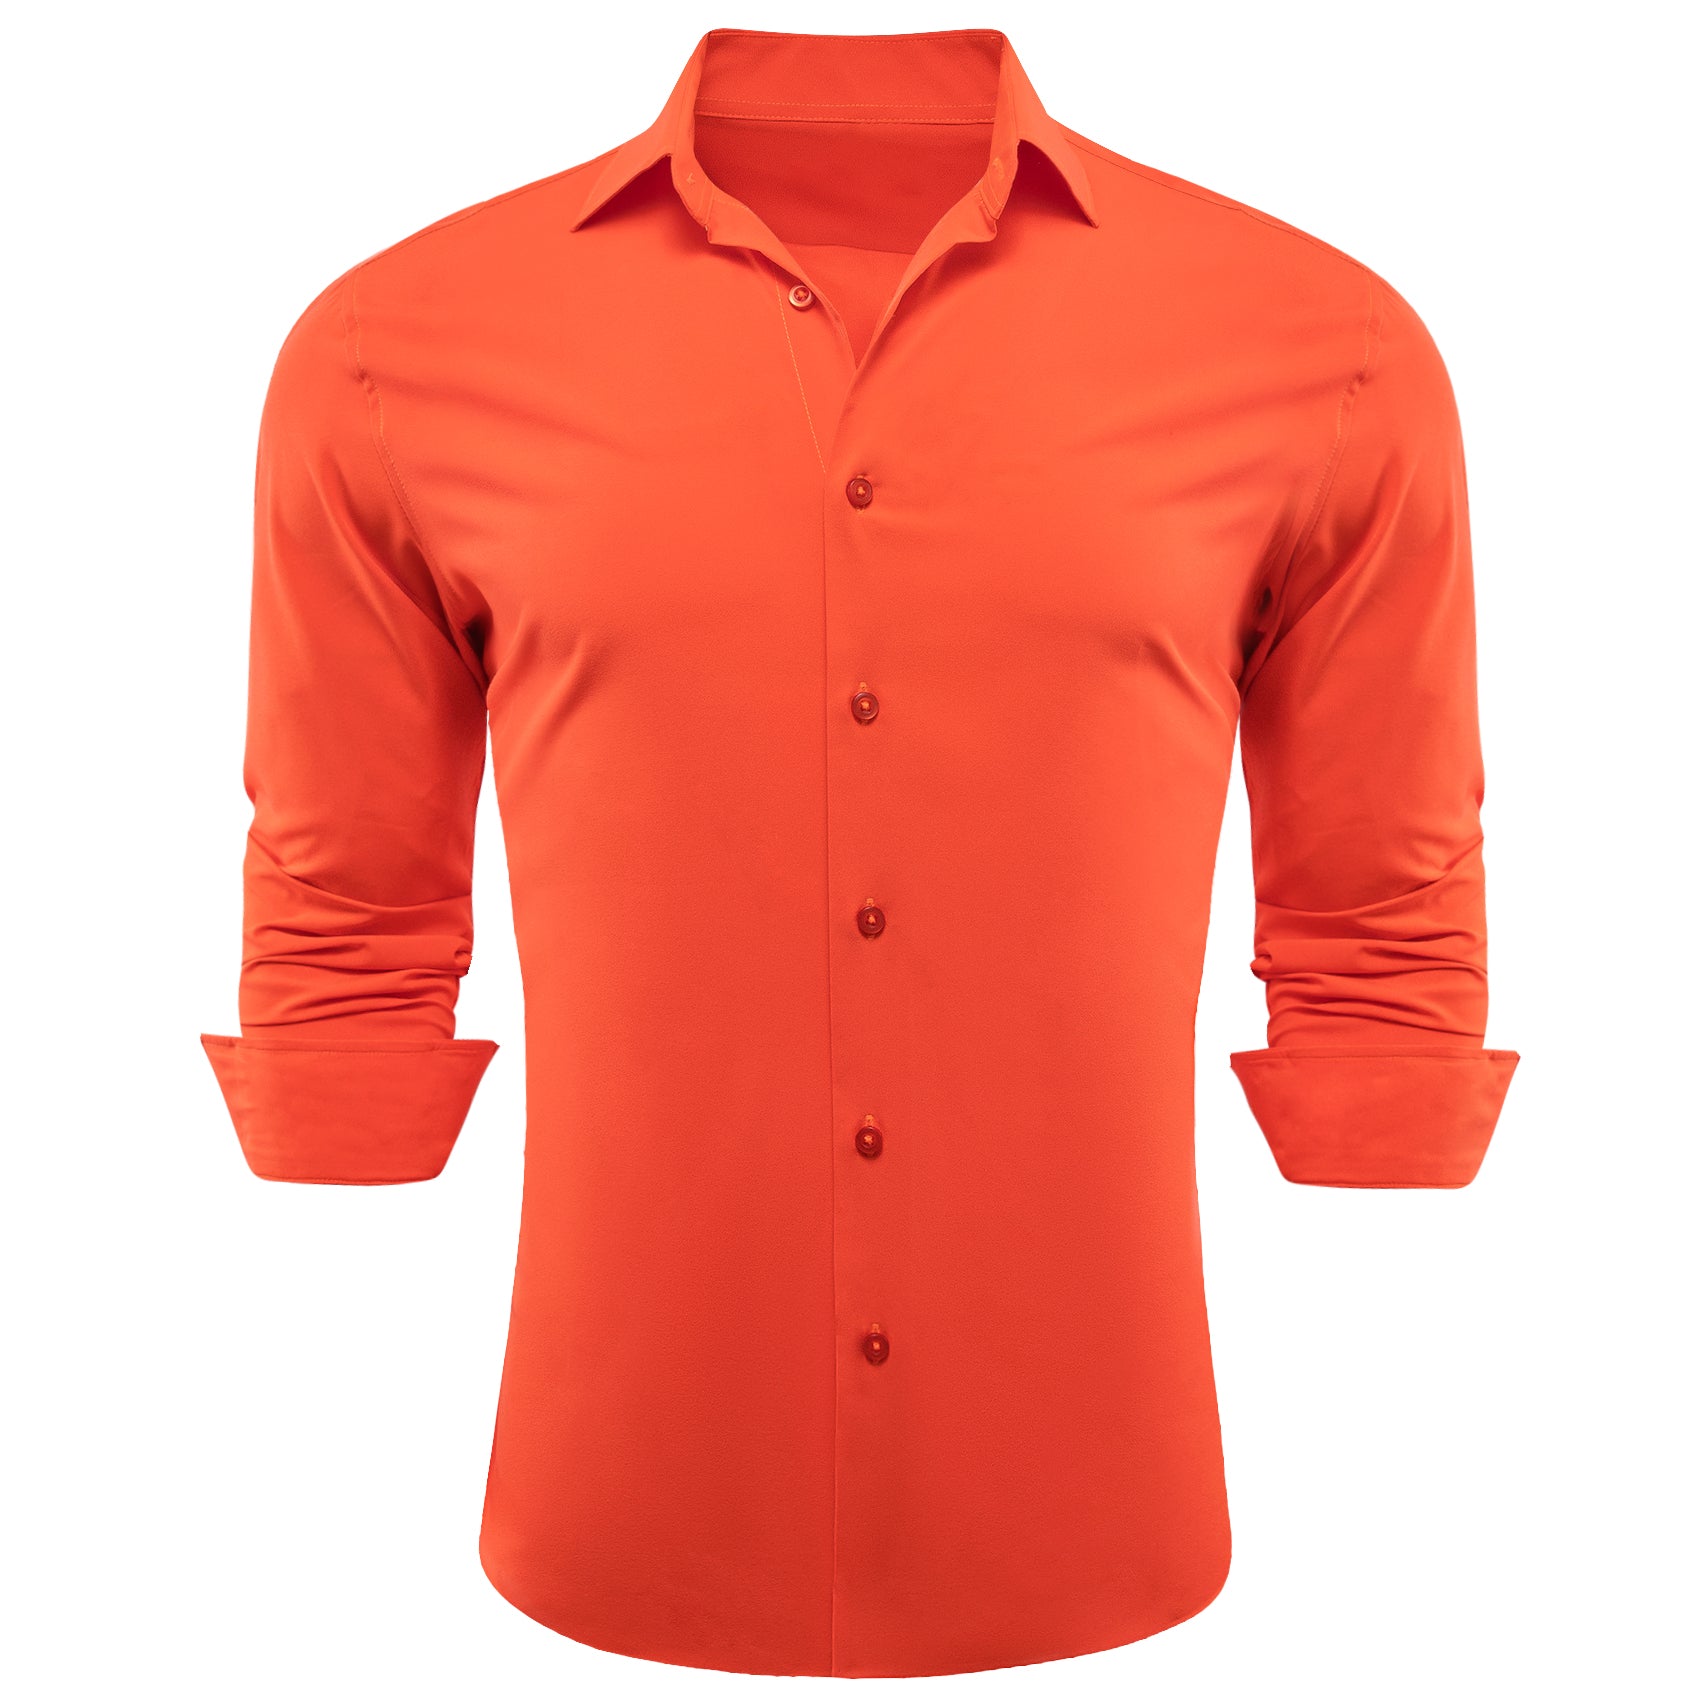 Barry.wang Orangered Solid Silk Shirt